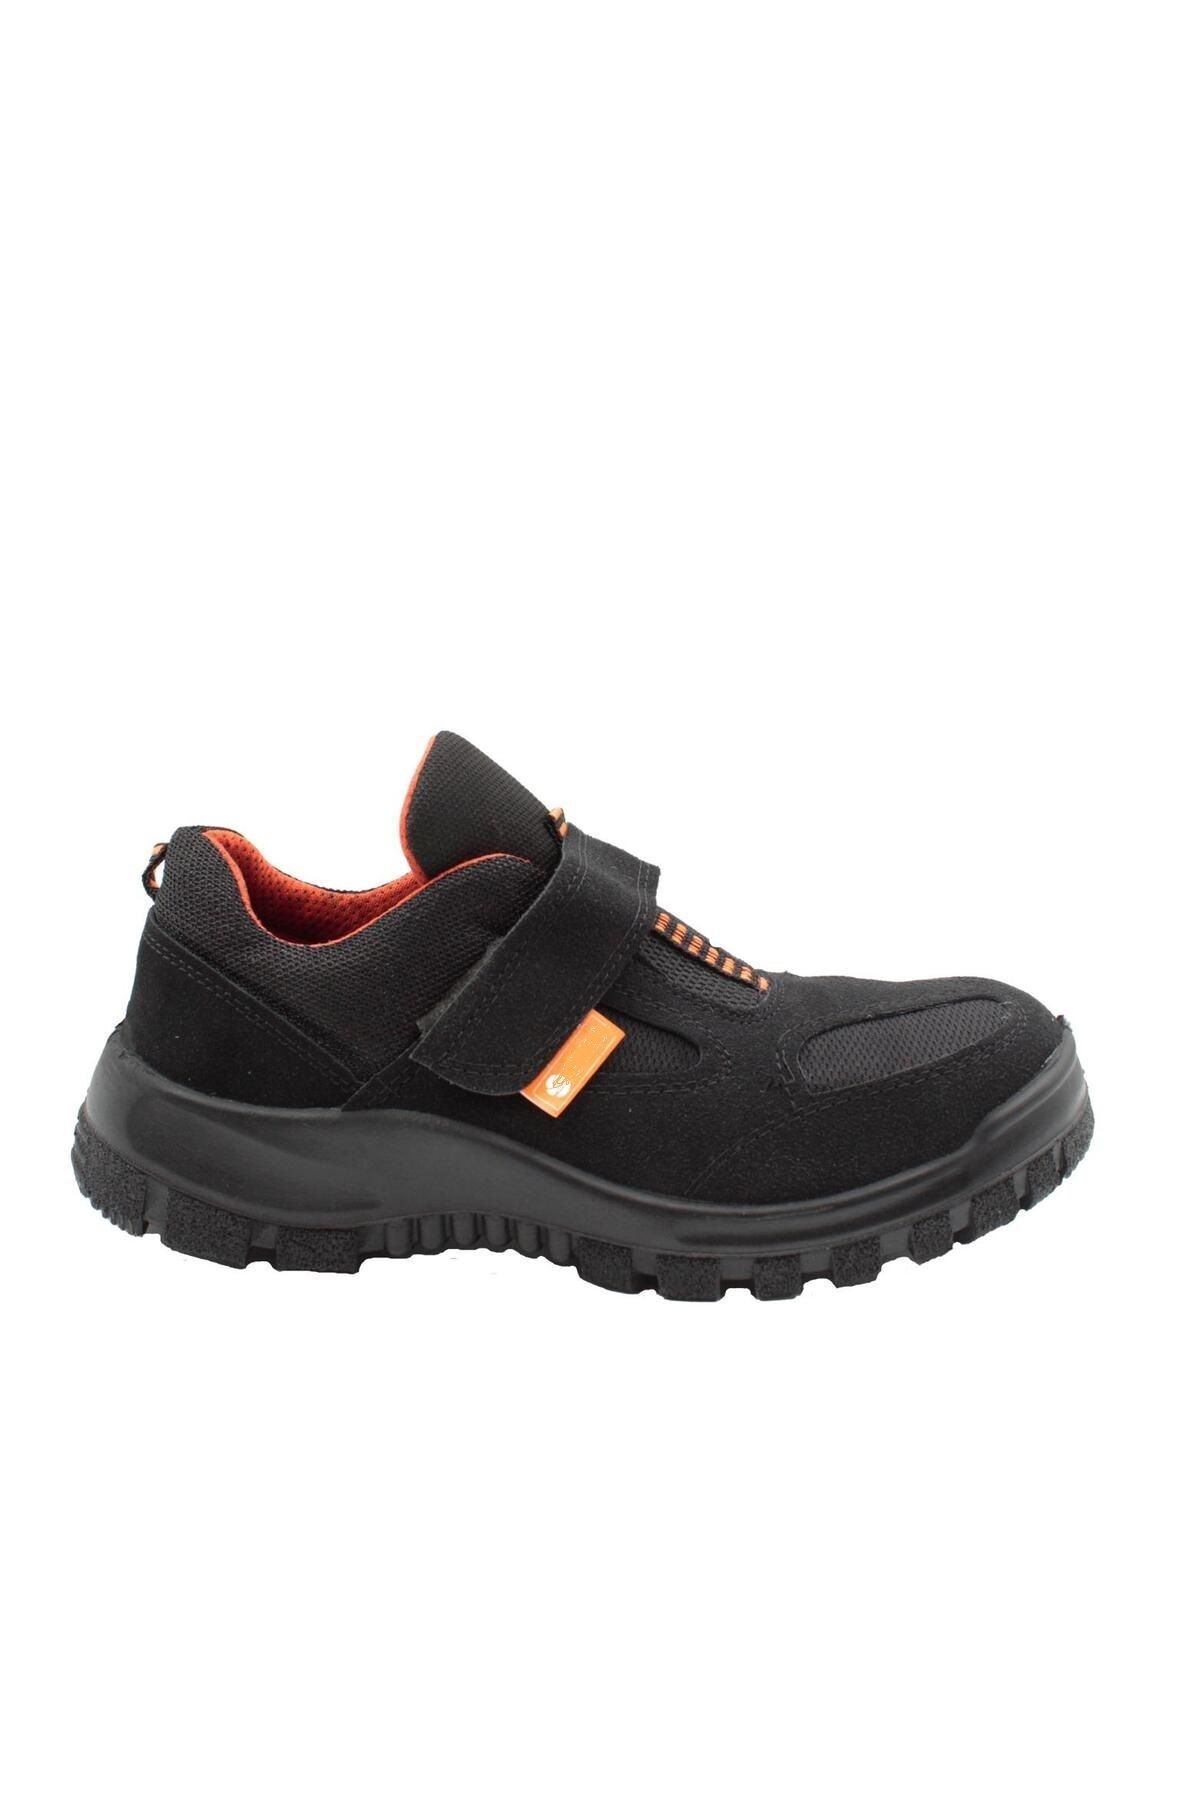 DDK İş Güvenliği Ayakkabısı Çelik Burun Süet Siyah S1